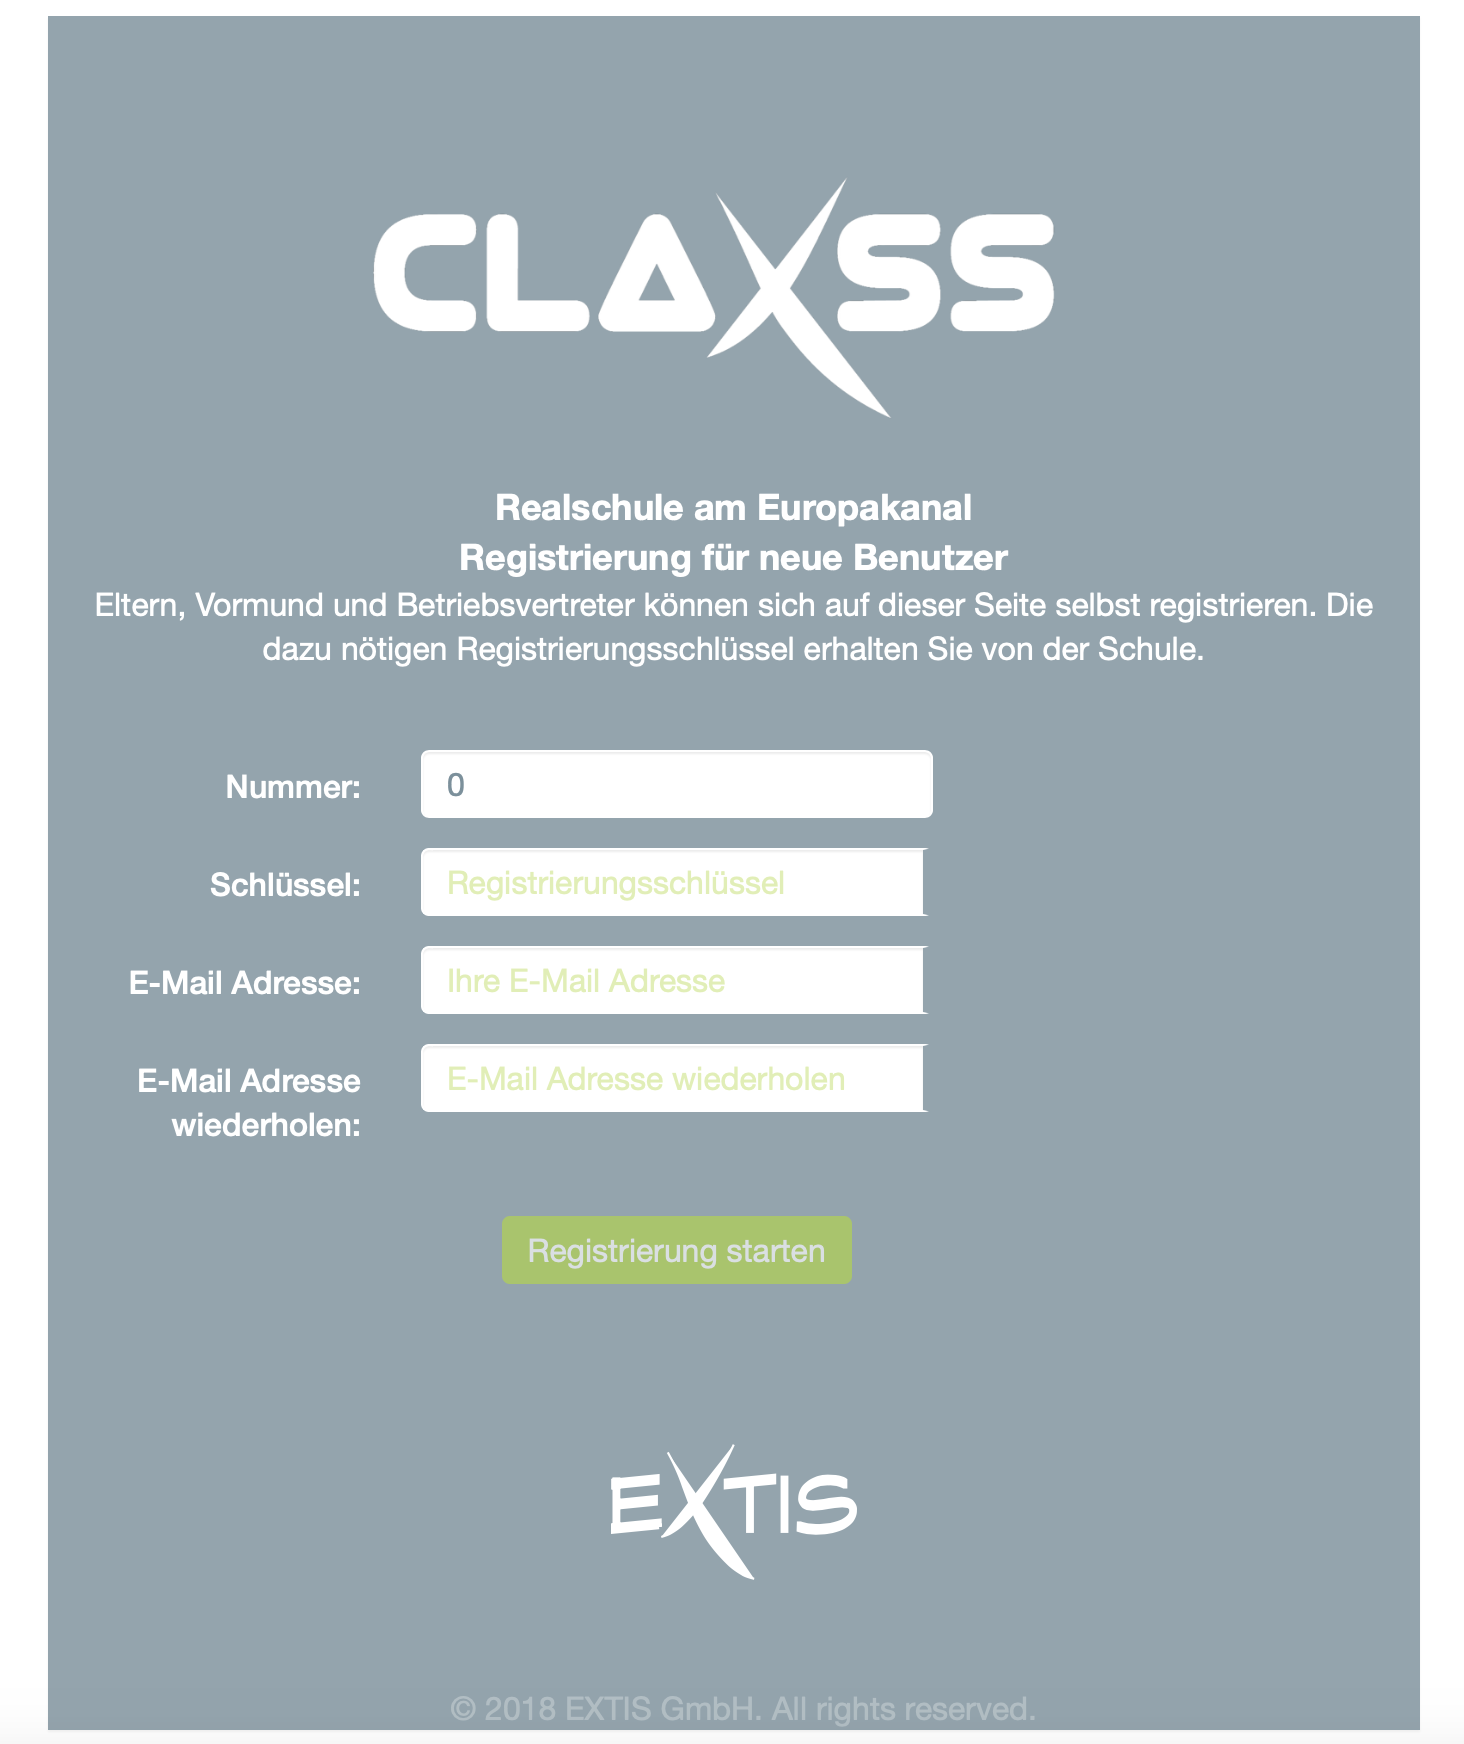 claxss-registration